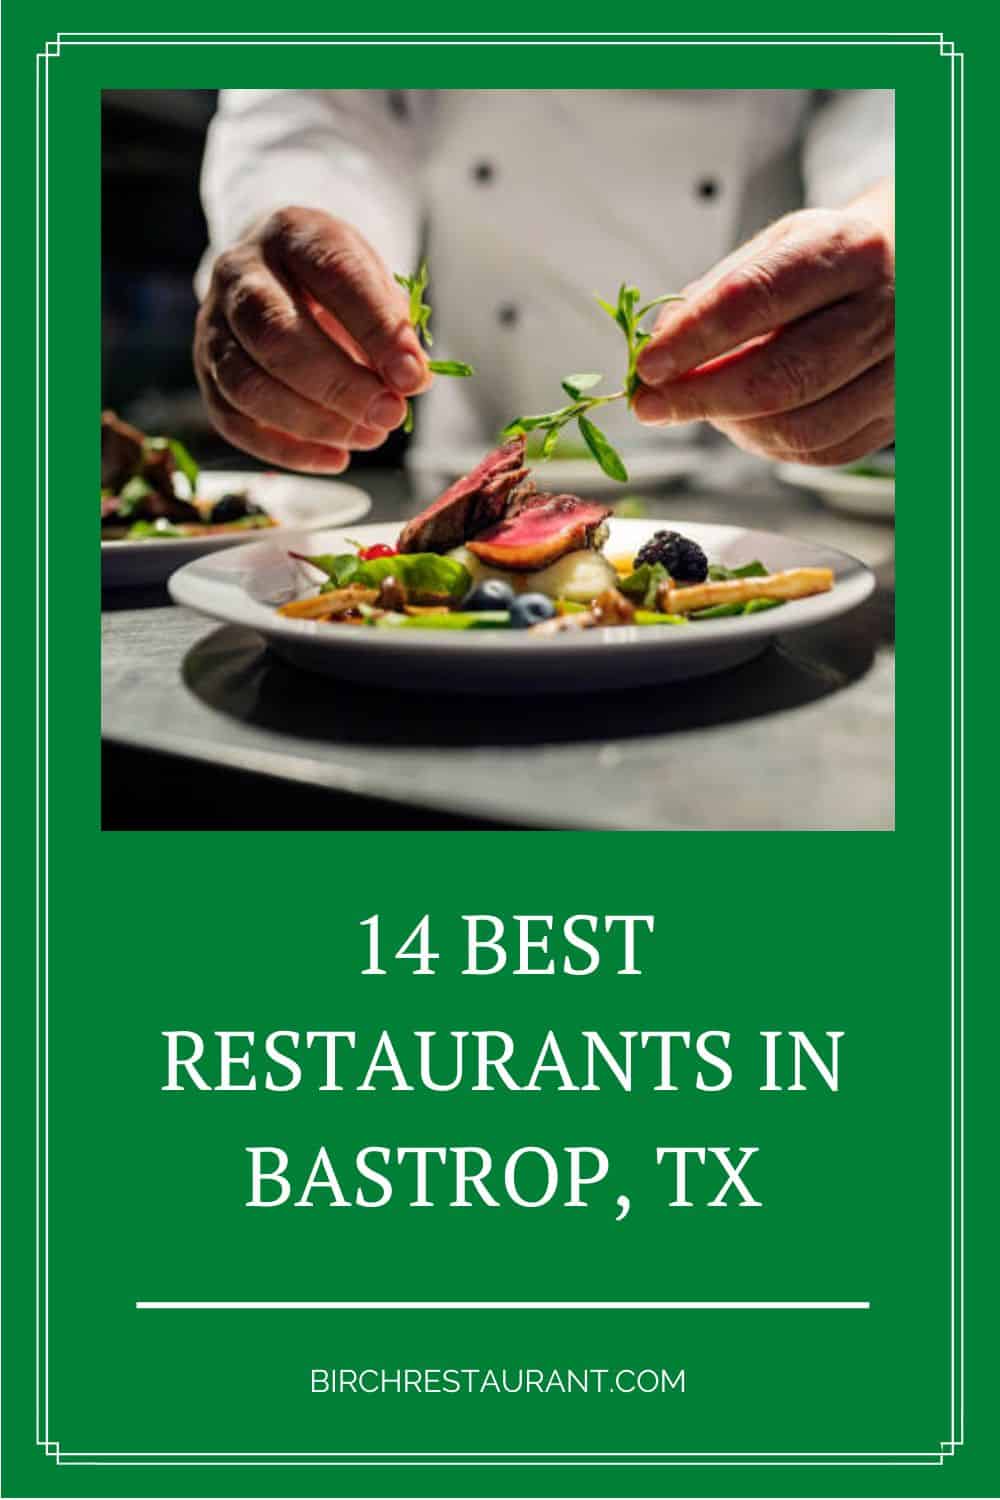 Best Restaurants in Bastrop, TX